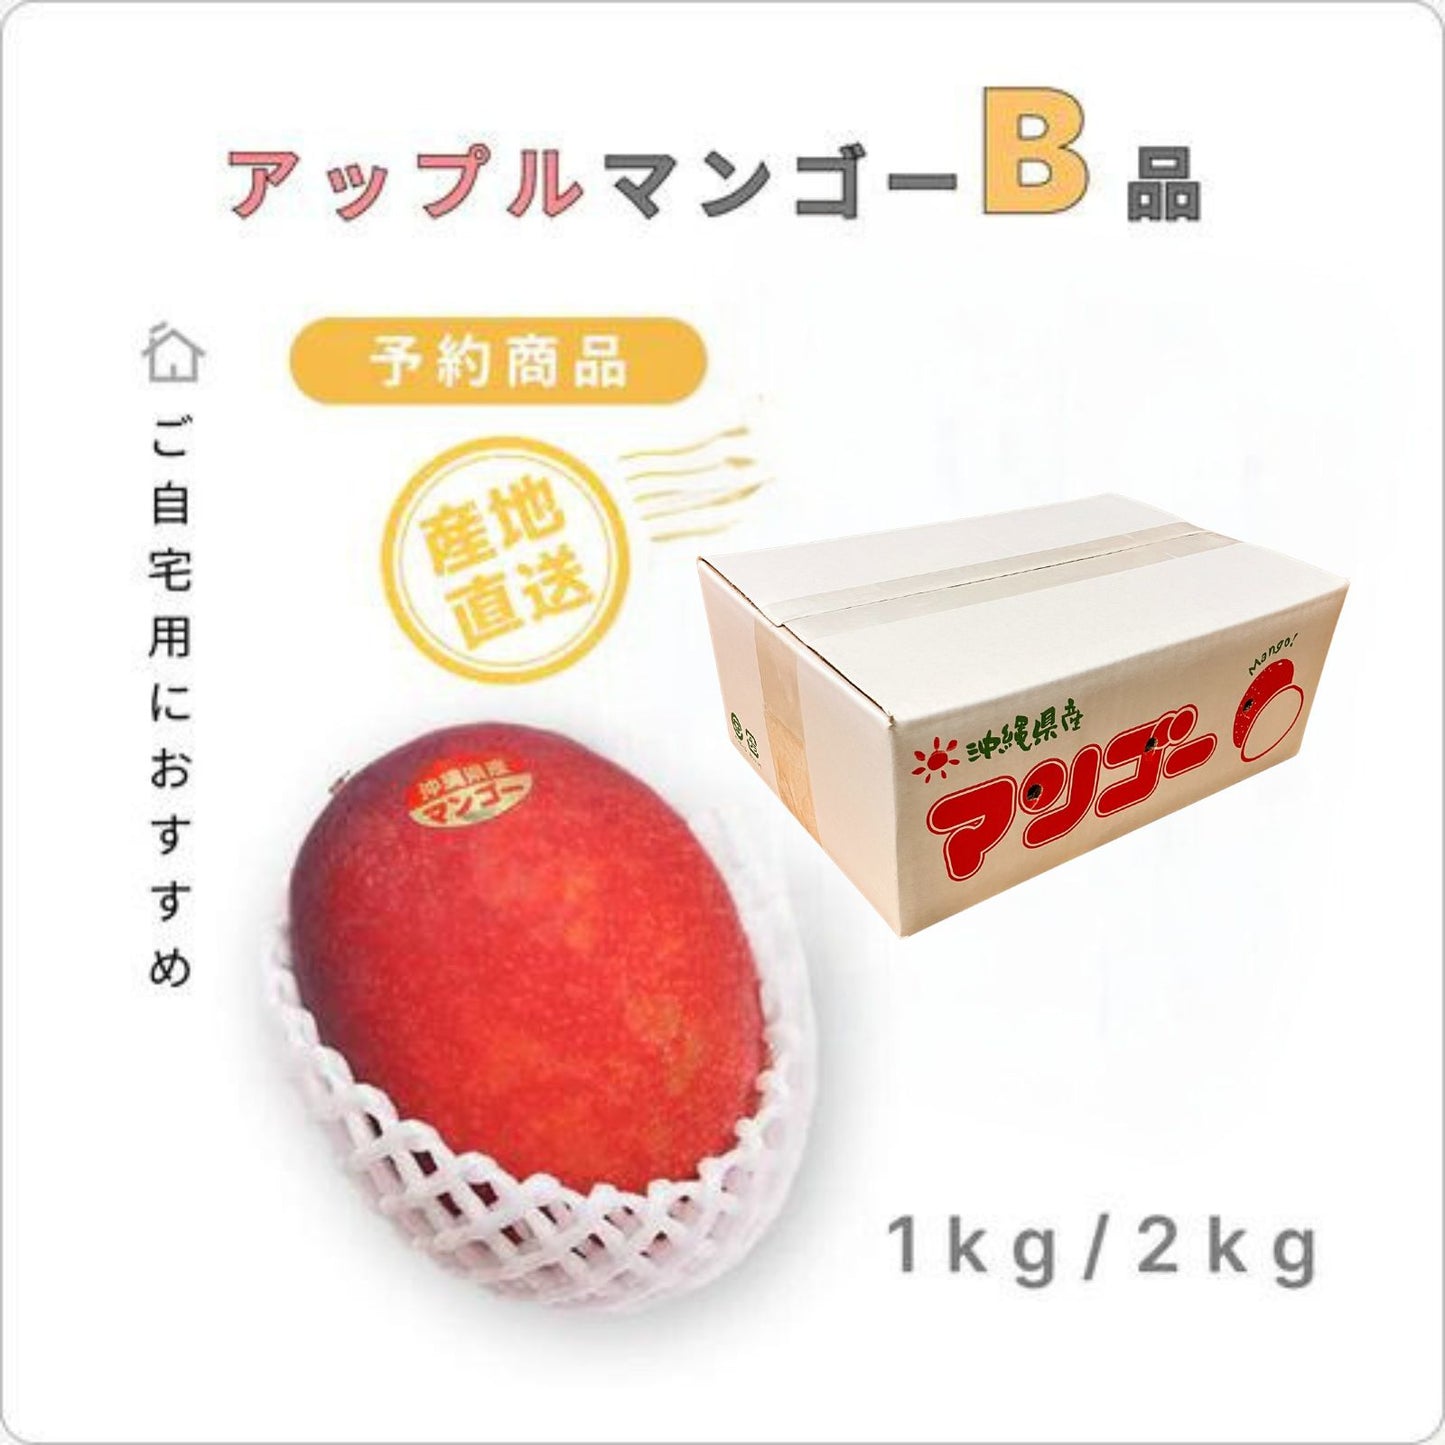 『予約商品』 南の果実園のアップルマンゴー 【B品】